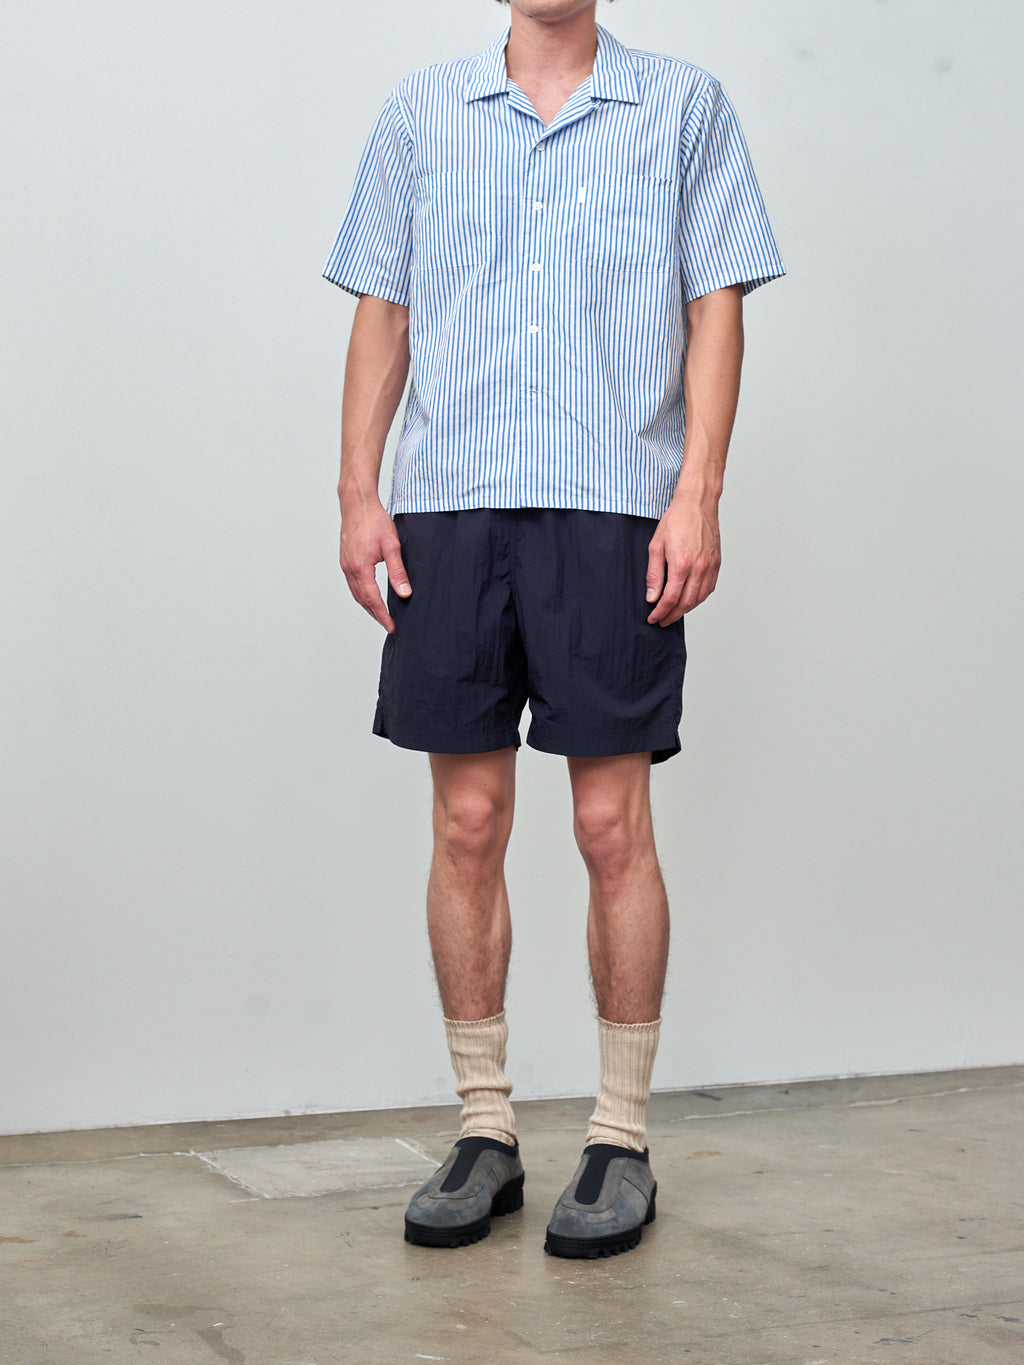 Namu Shop - SH Shirt Short Sleeve Open Collar Shirt - Blue Stripe Cotton/Linen